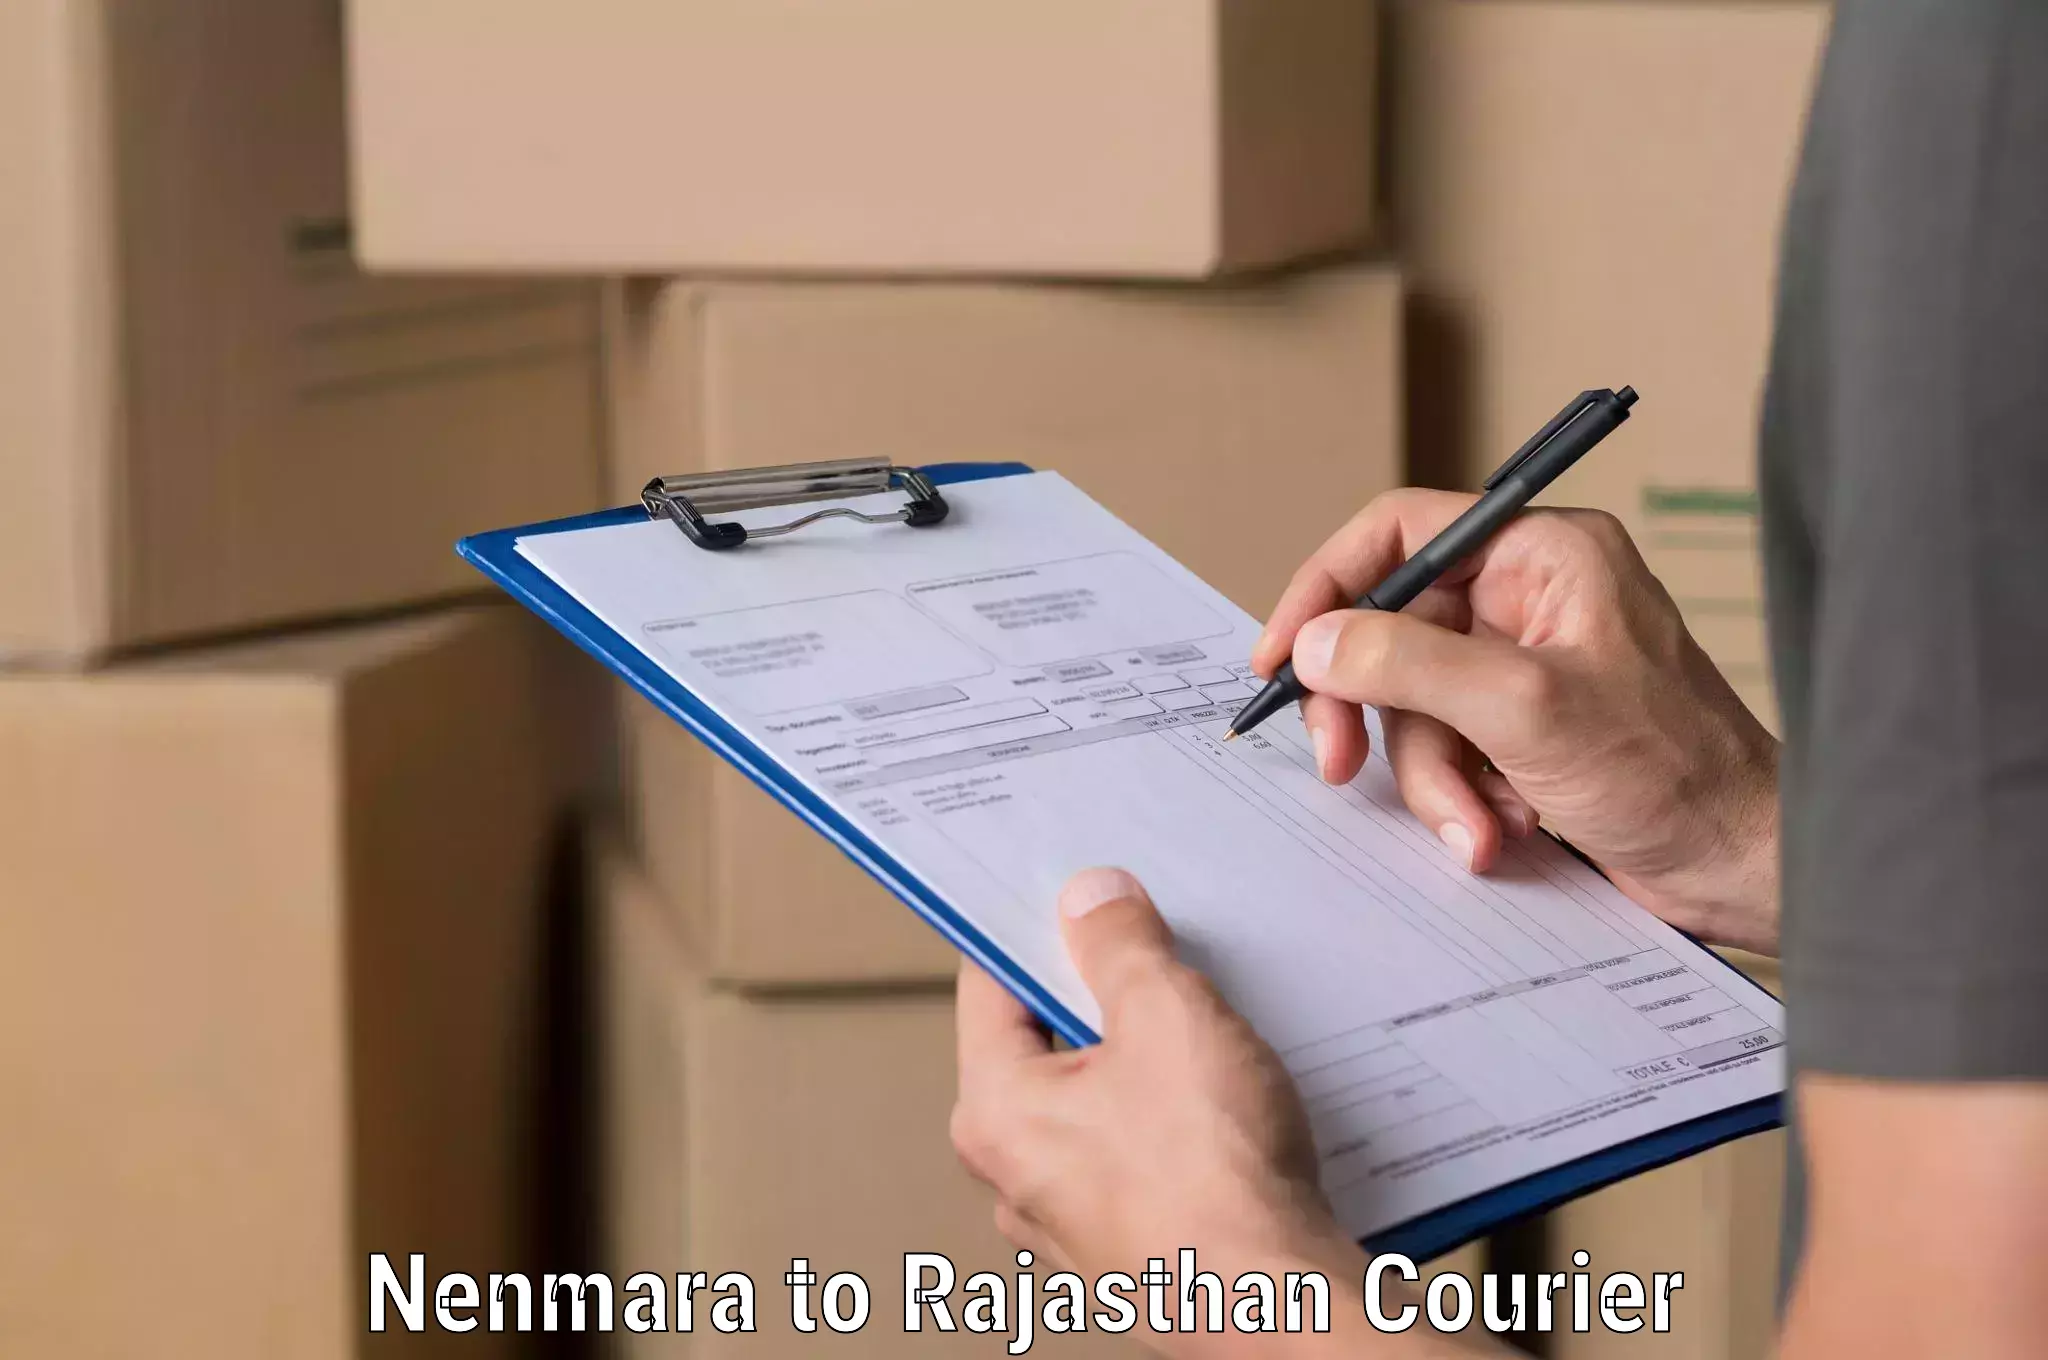 Business logistics support in Nenmara to Sambhar